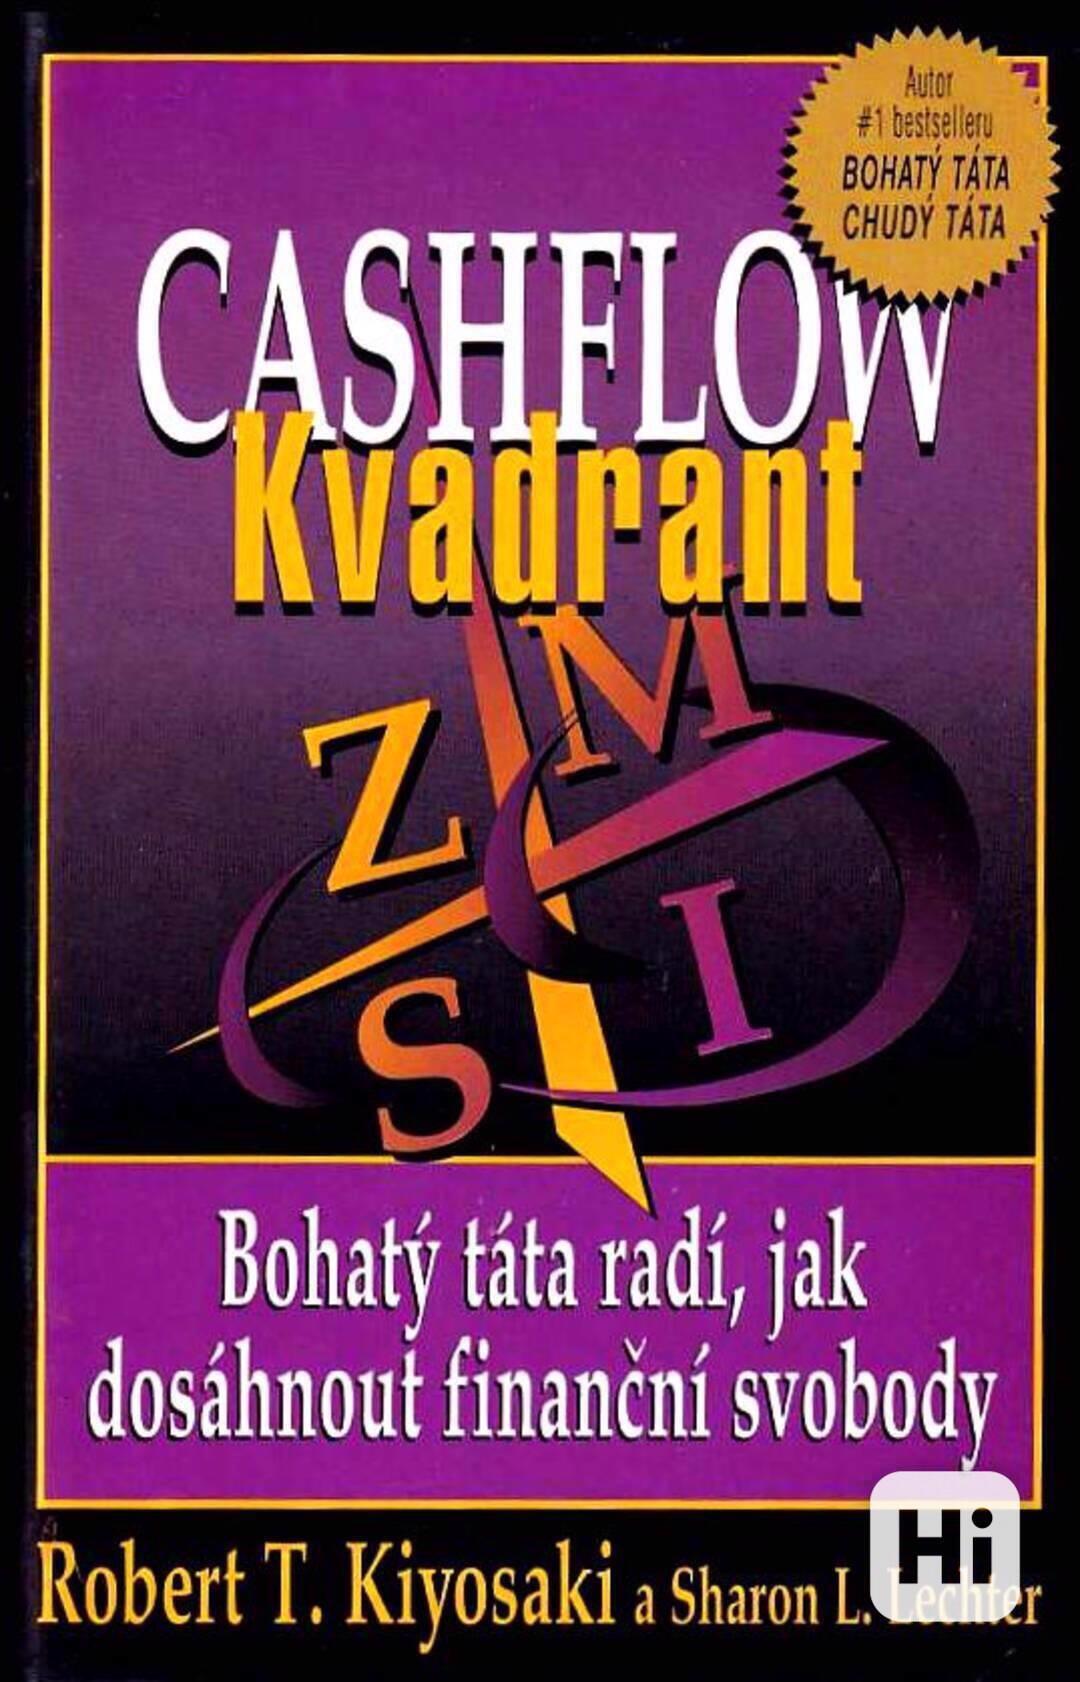 ( Finanční vzdělání ) Robert Kiyosaki - Cashflow kvadrant - foto 1